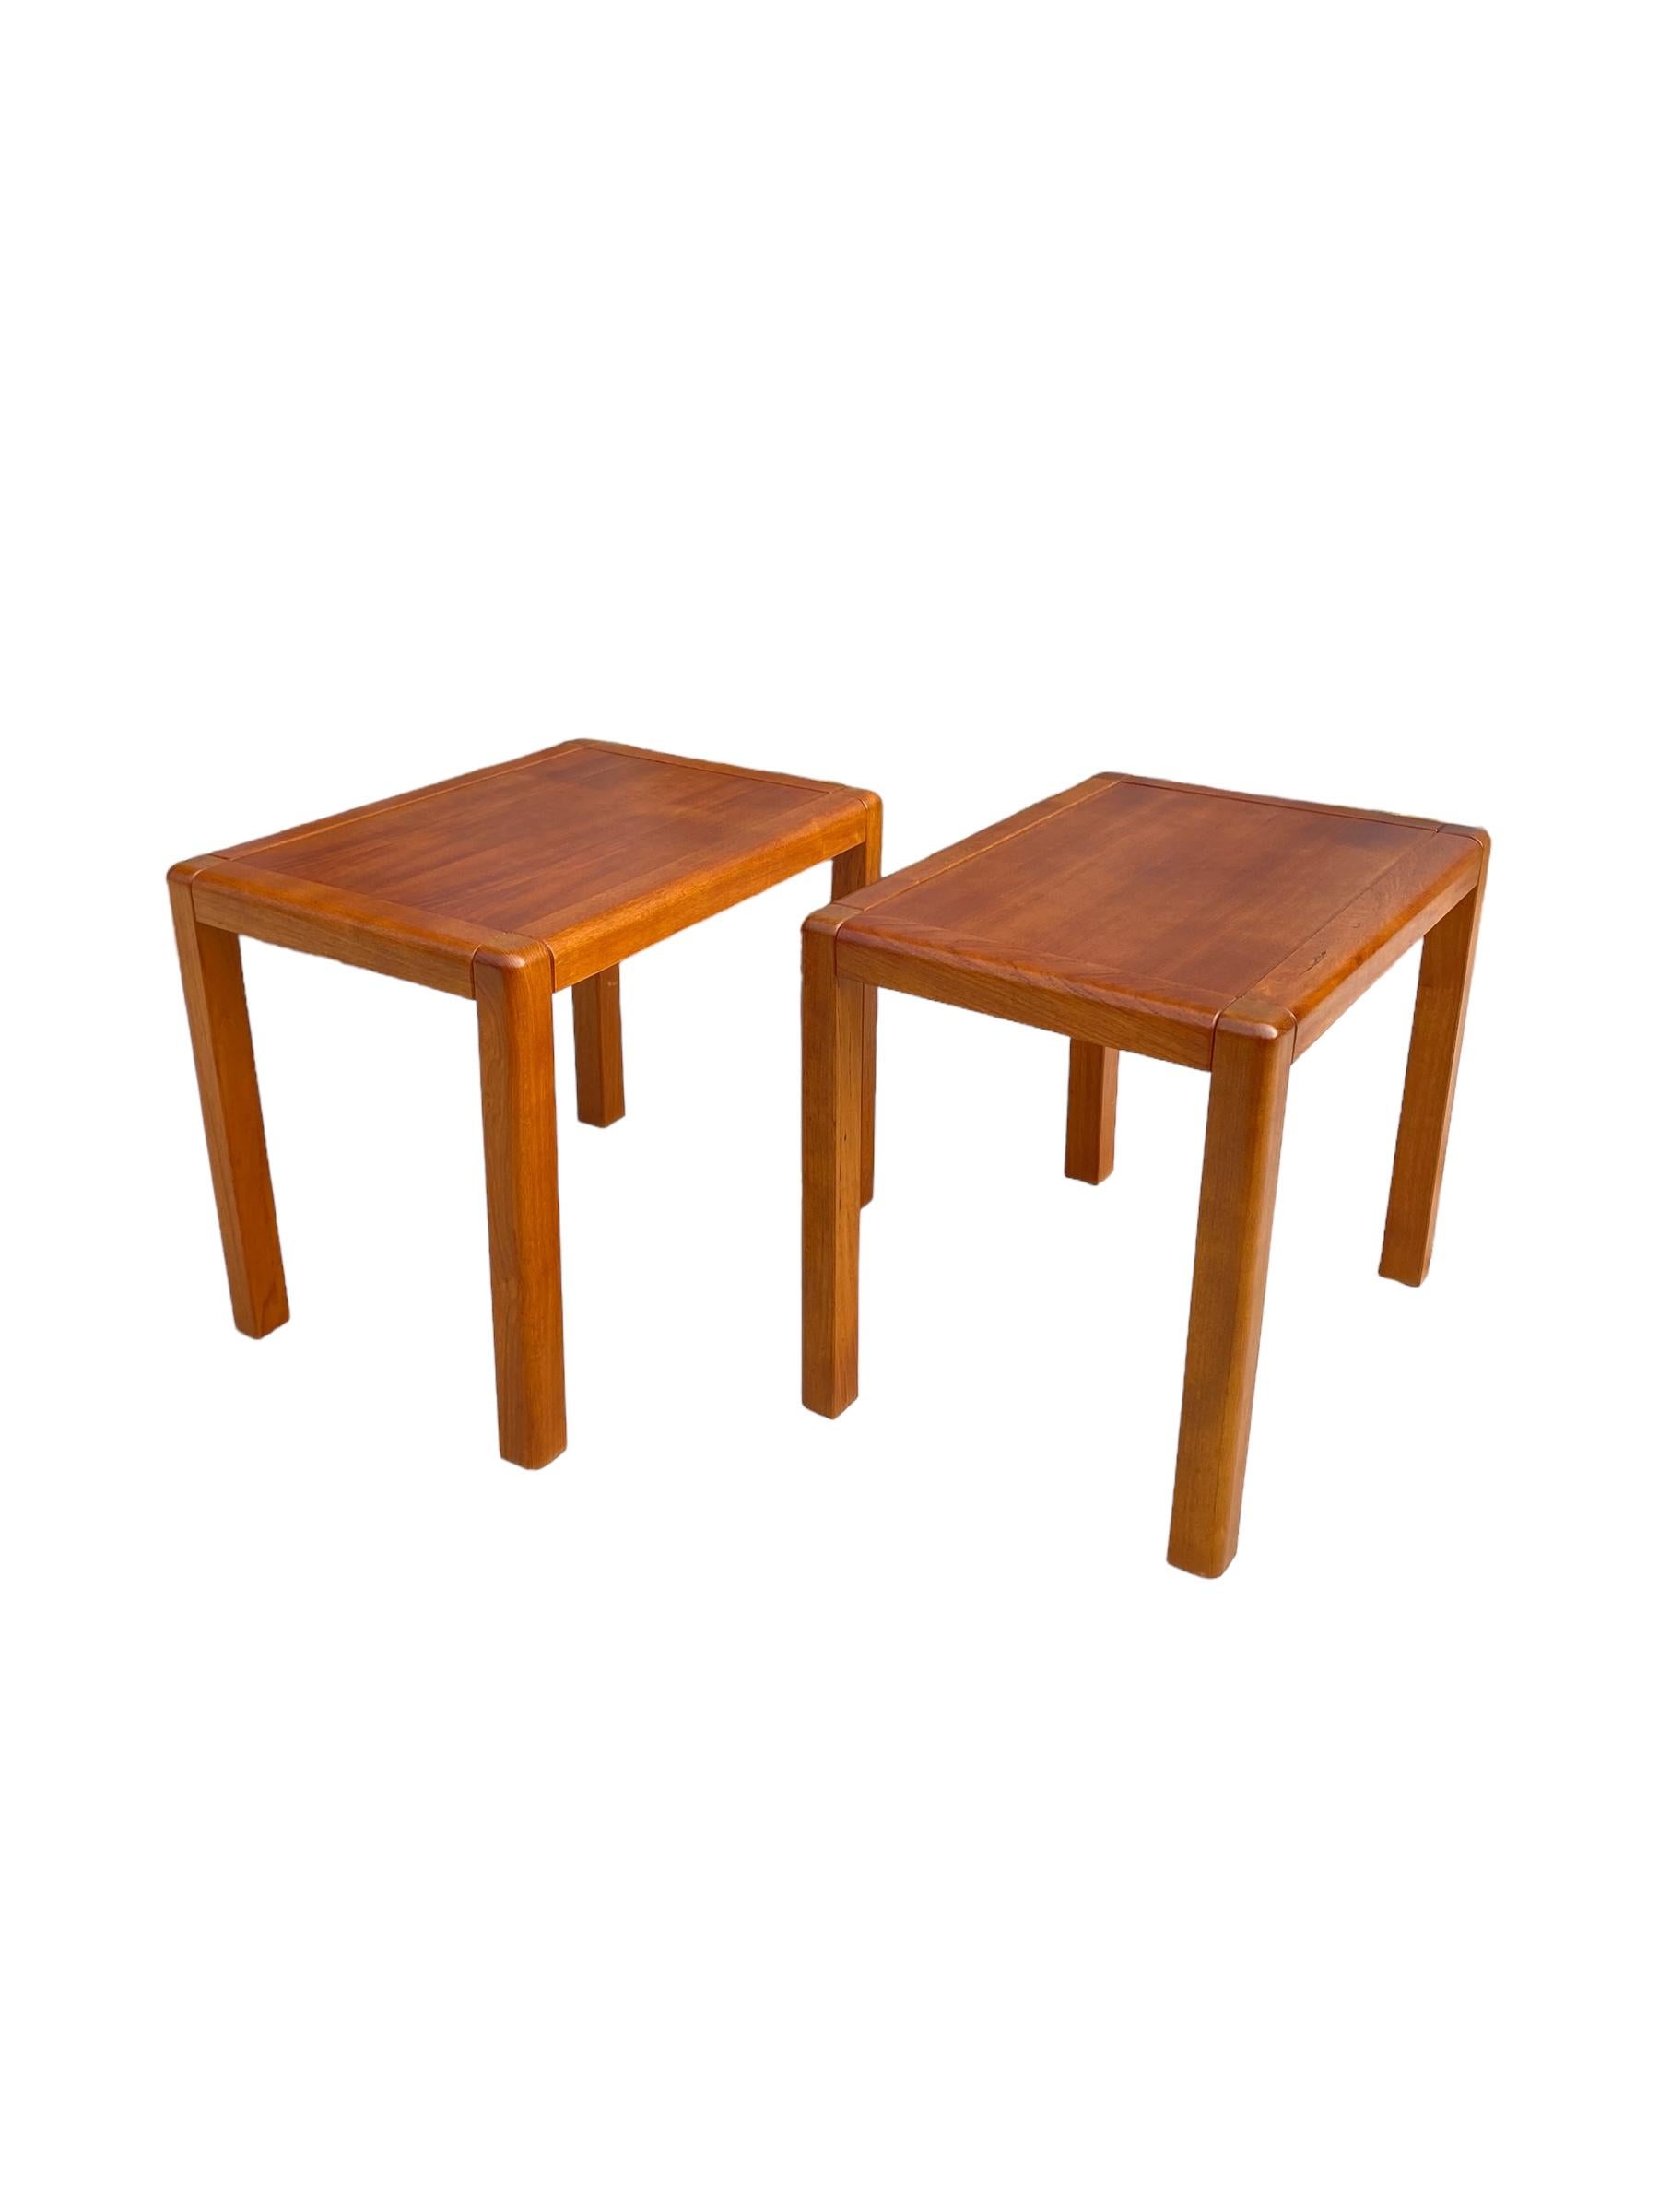 Zwei moderne dänische Teakholz-Tische / Nachttische. Diese in Dänemark hergestellten Vintage-Tische haben eine gleichmäßige Maserung und eine warme Teakholzfarbe. Schlankes und minimales Design. 